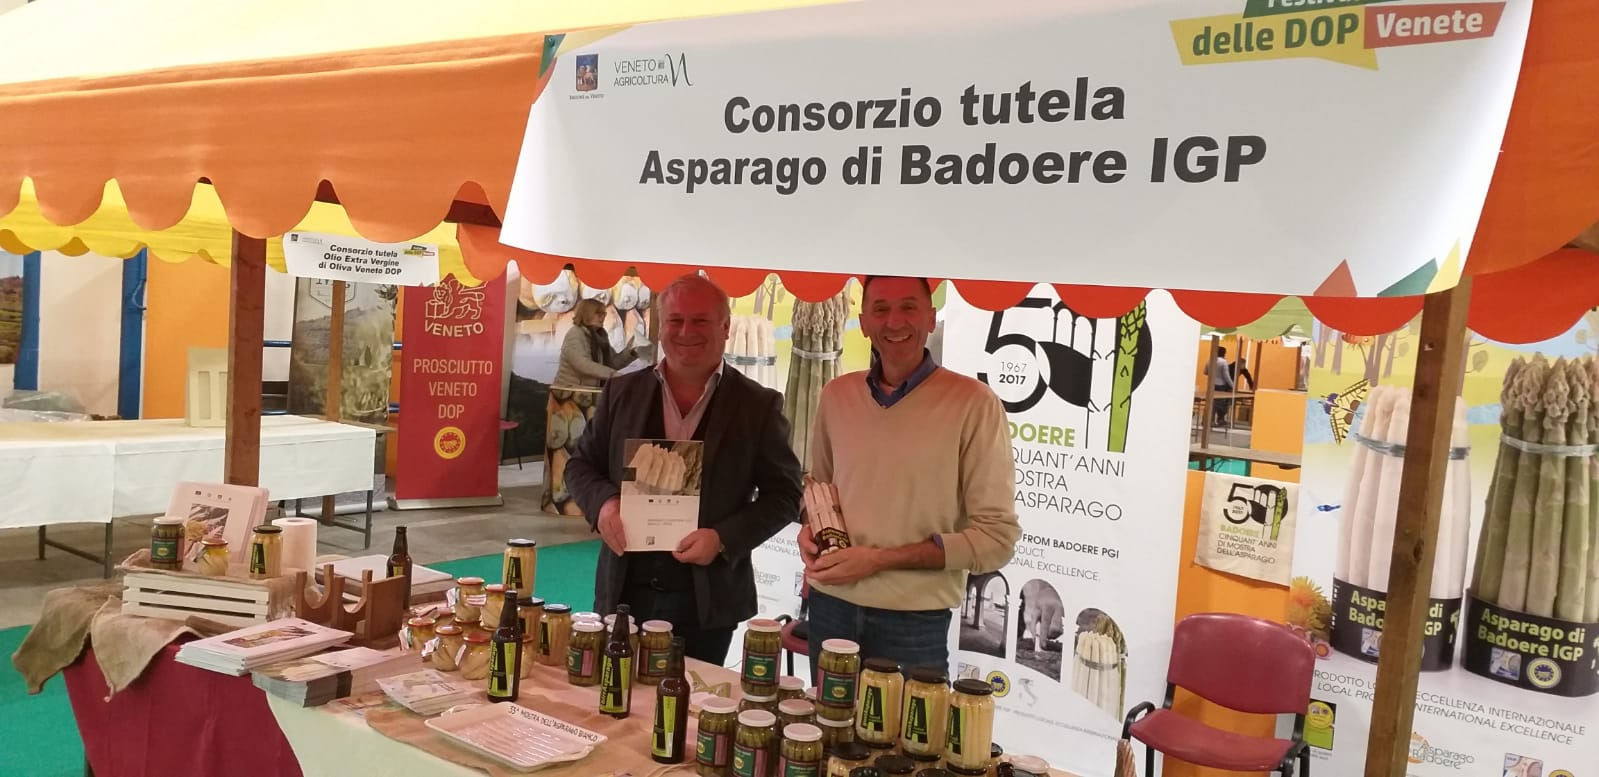 Il direttivo del consorzio dell'asparago di Badoere al festival delle dop venete